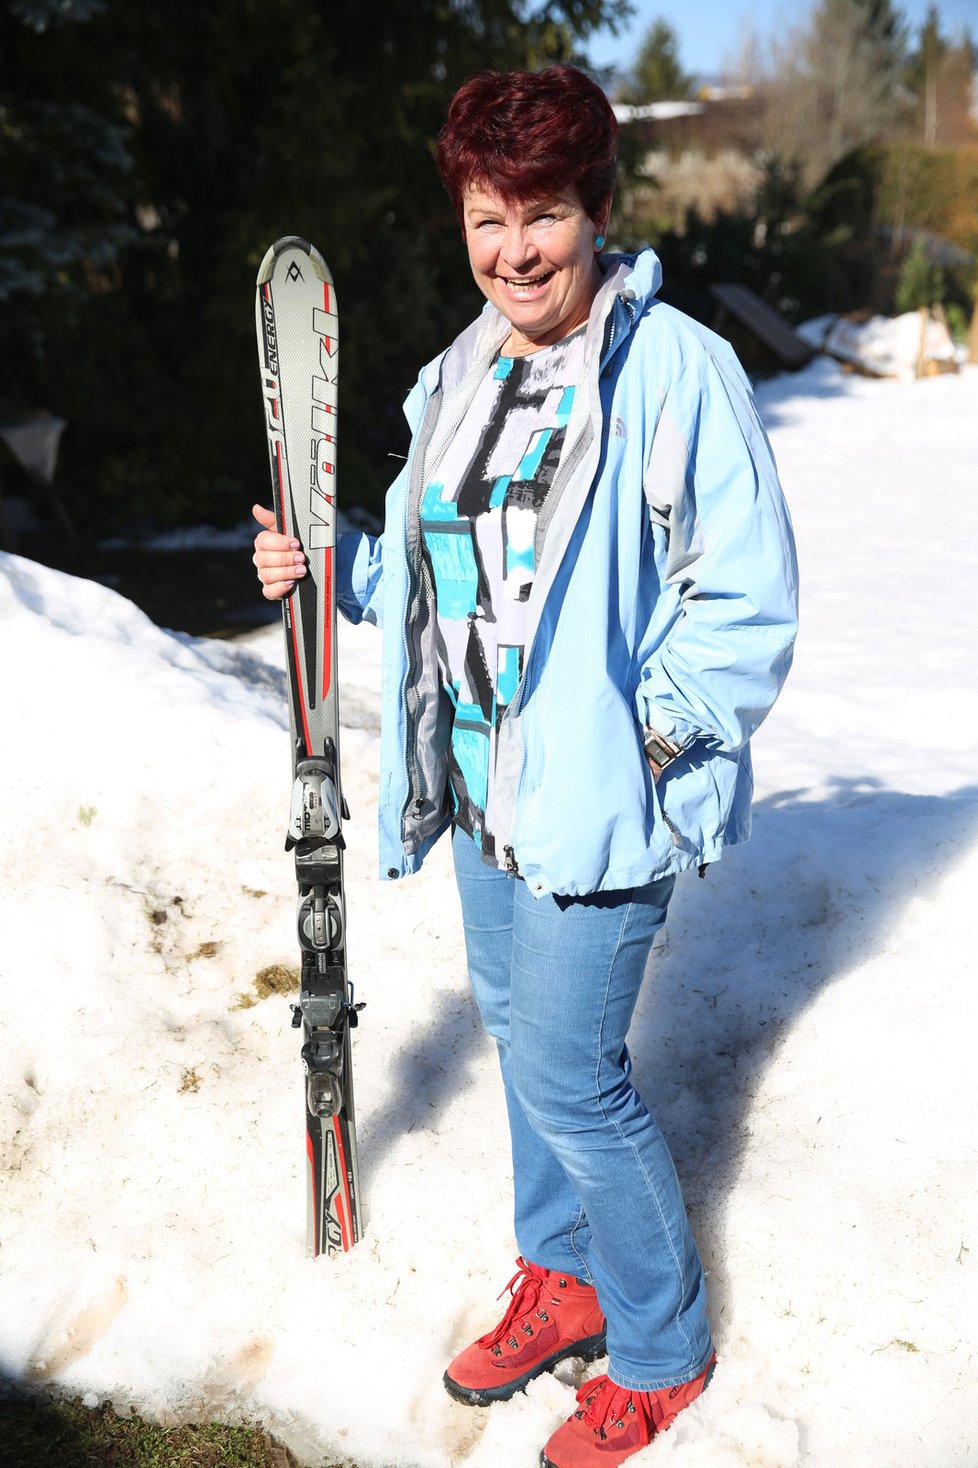 Paní Jaroslava lyžuje ráda a často, bydlí mezi několika velkými lyžařskými areály.